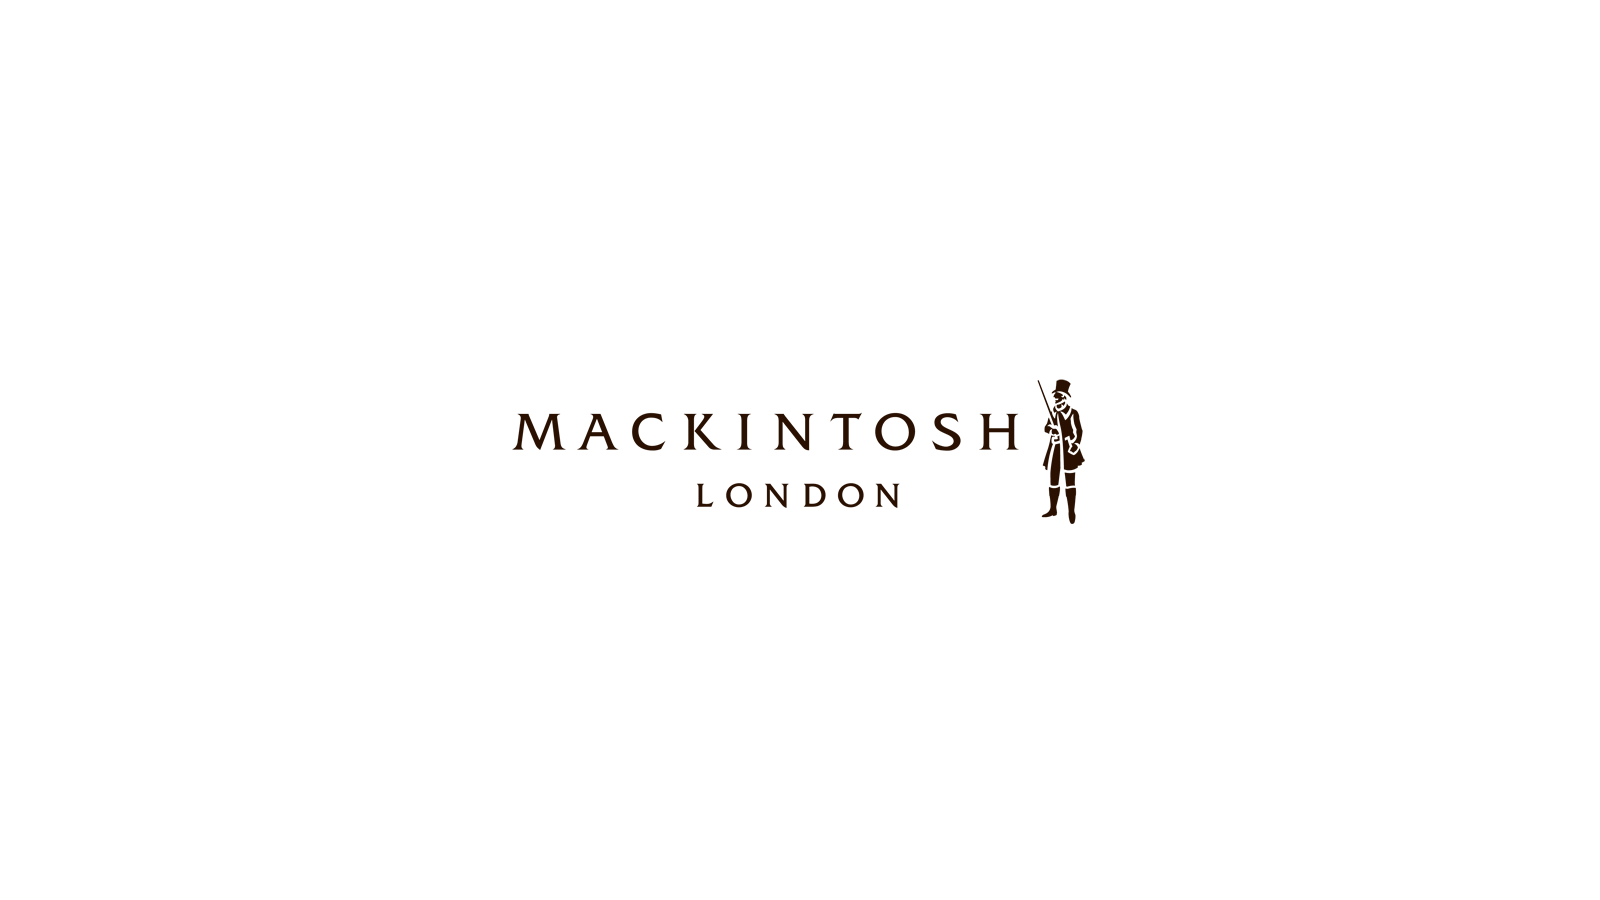 『MACKINTOSH LONDON/マッキントッシュ ロンドン』のブランド情報 | ブランドノート [brand note]